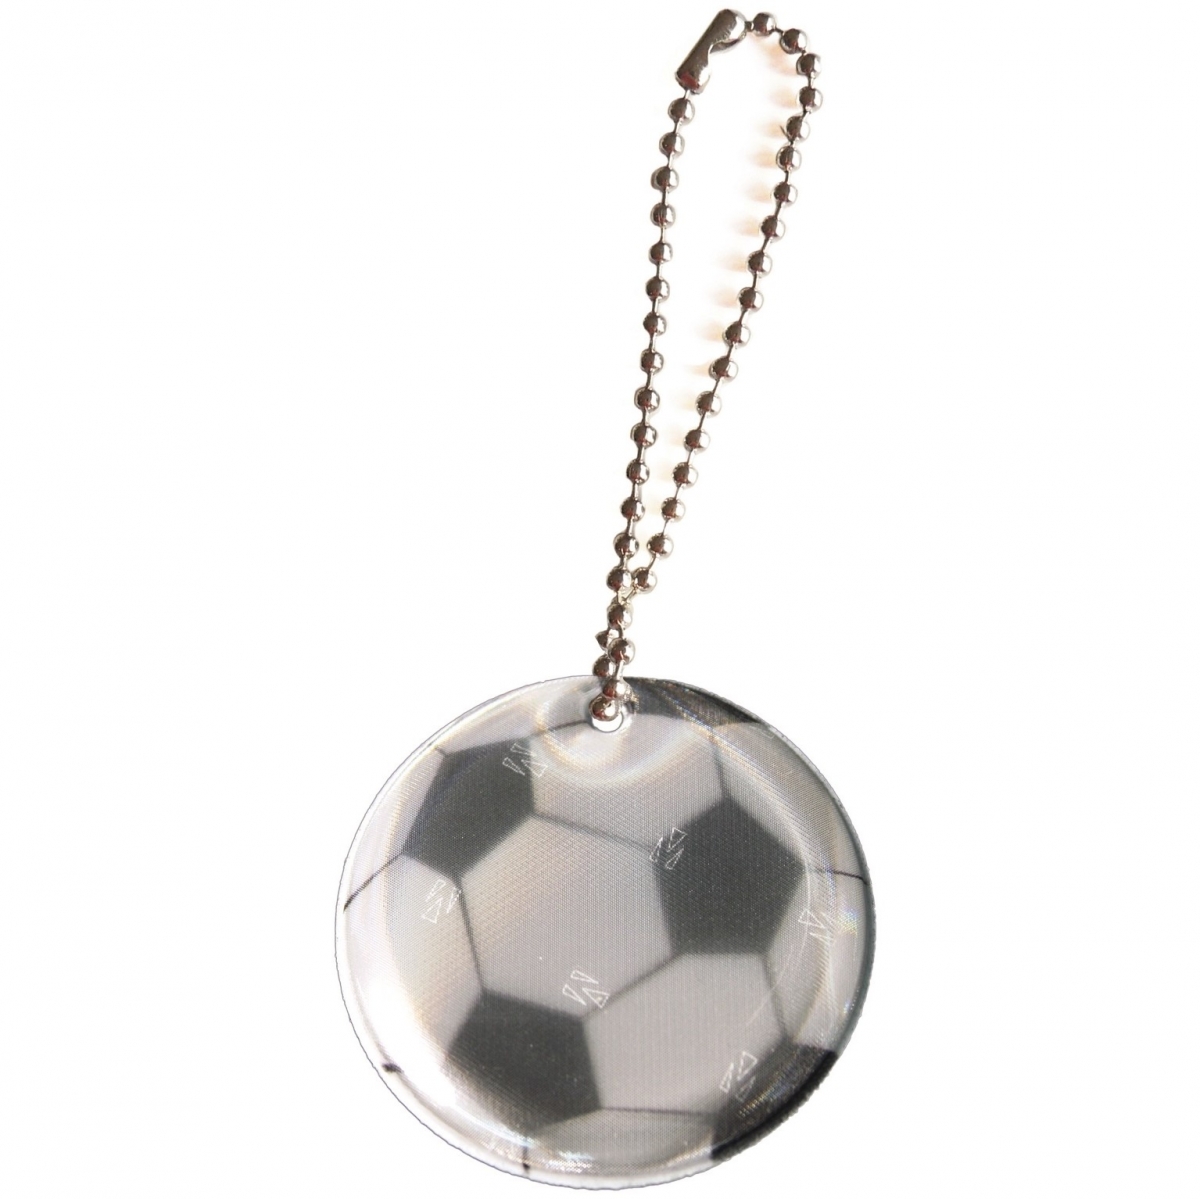 Hengerefleks Soccer ball